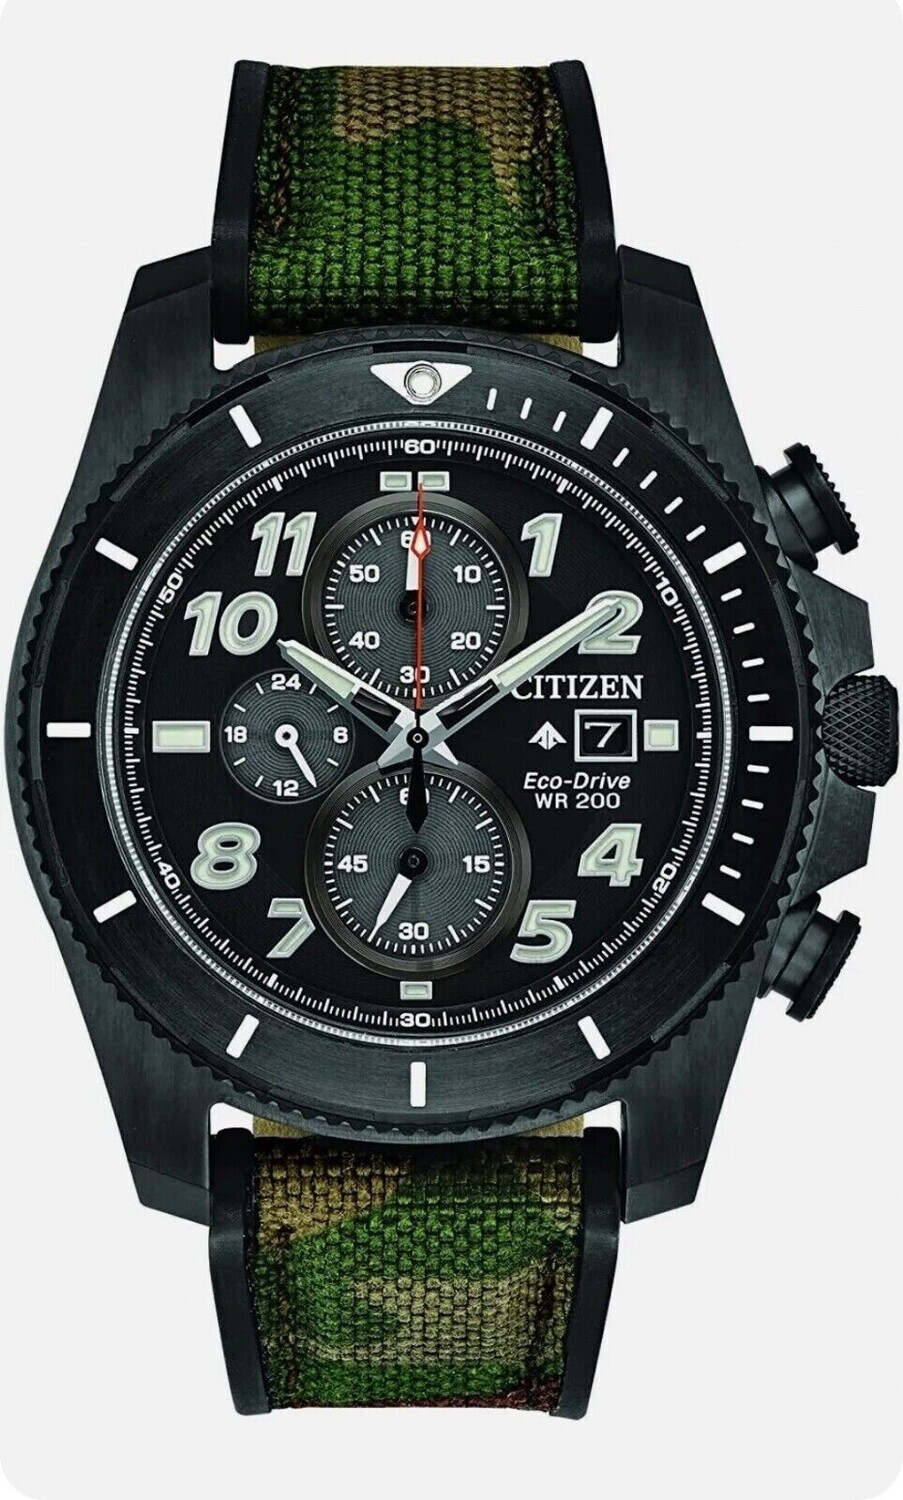 Reloj deportivo hombre Citizen Promaster Tough CA0727-12E 44mm dial negro Cristal de Zafiro correa de nylon 200m WR movimiento Ecodrive (funciona con energía solar o luz)